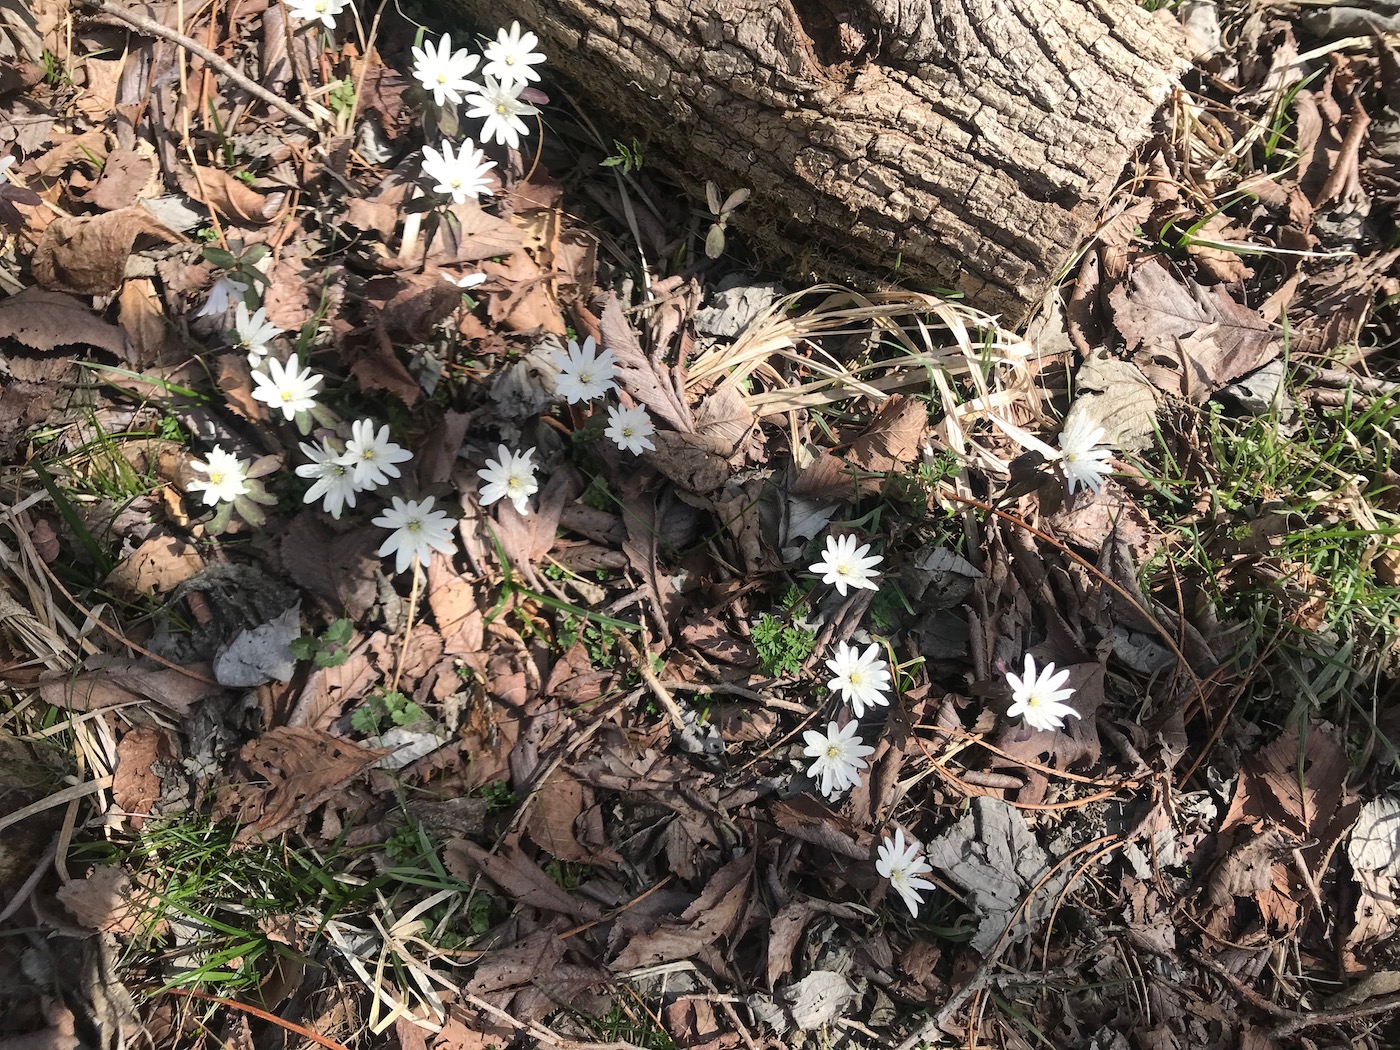 枯葉の中で咲く白い花は小さくてもとても目立っていました